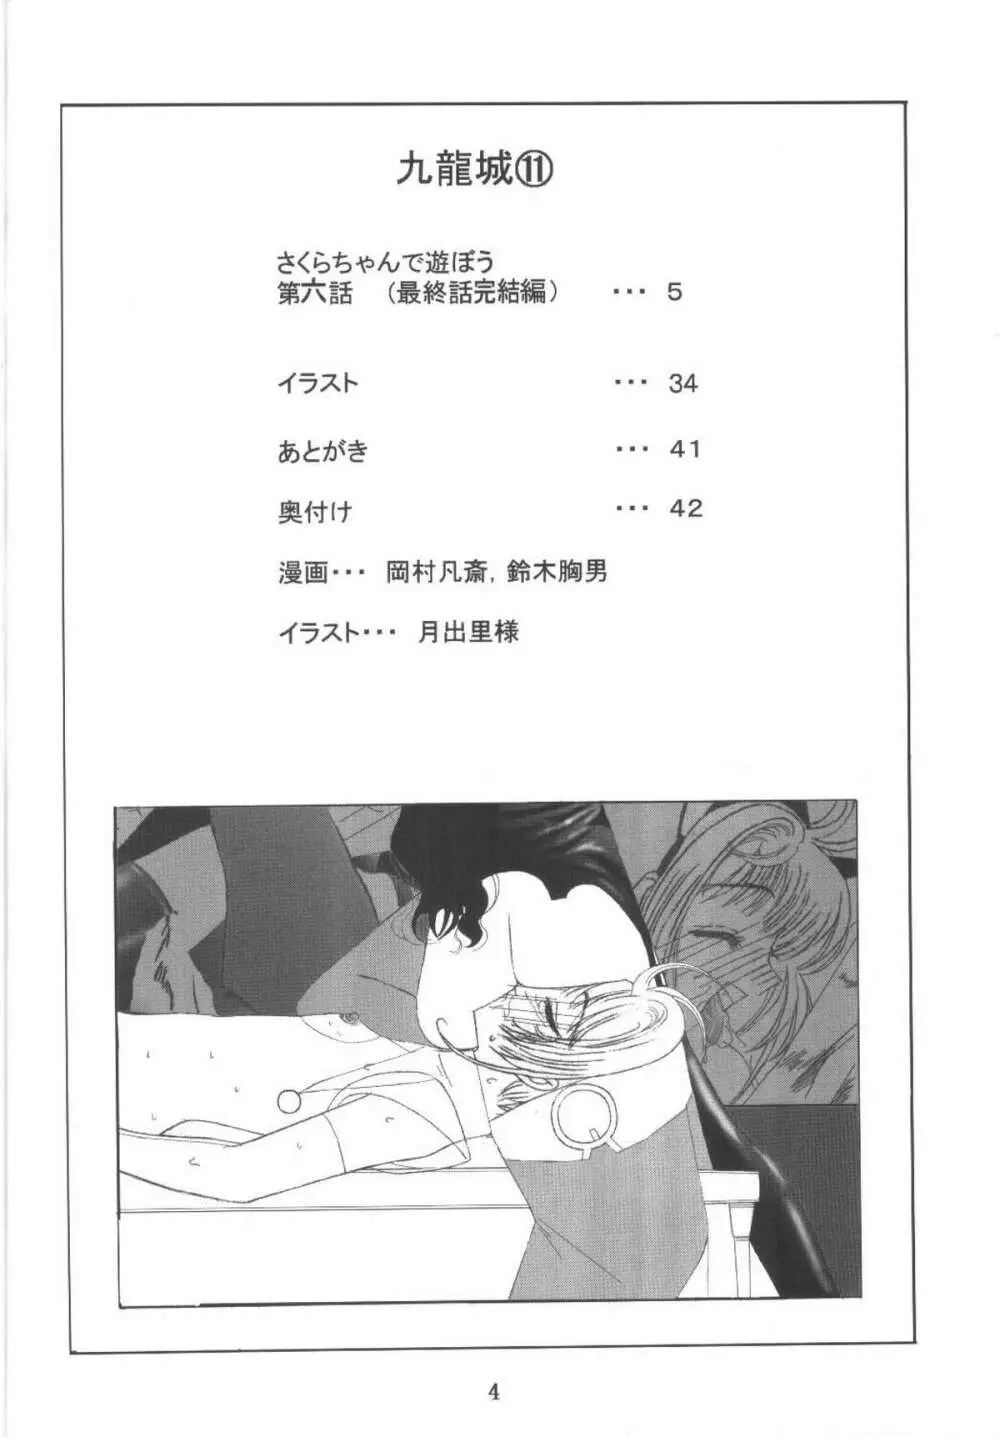 九龍城11 さくらちゃんで遊ぼう6 - page4